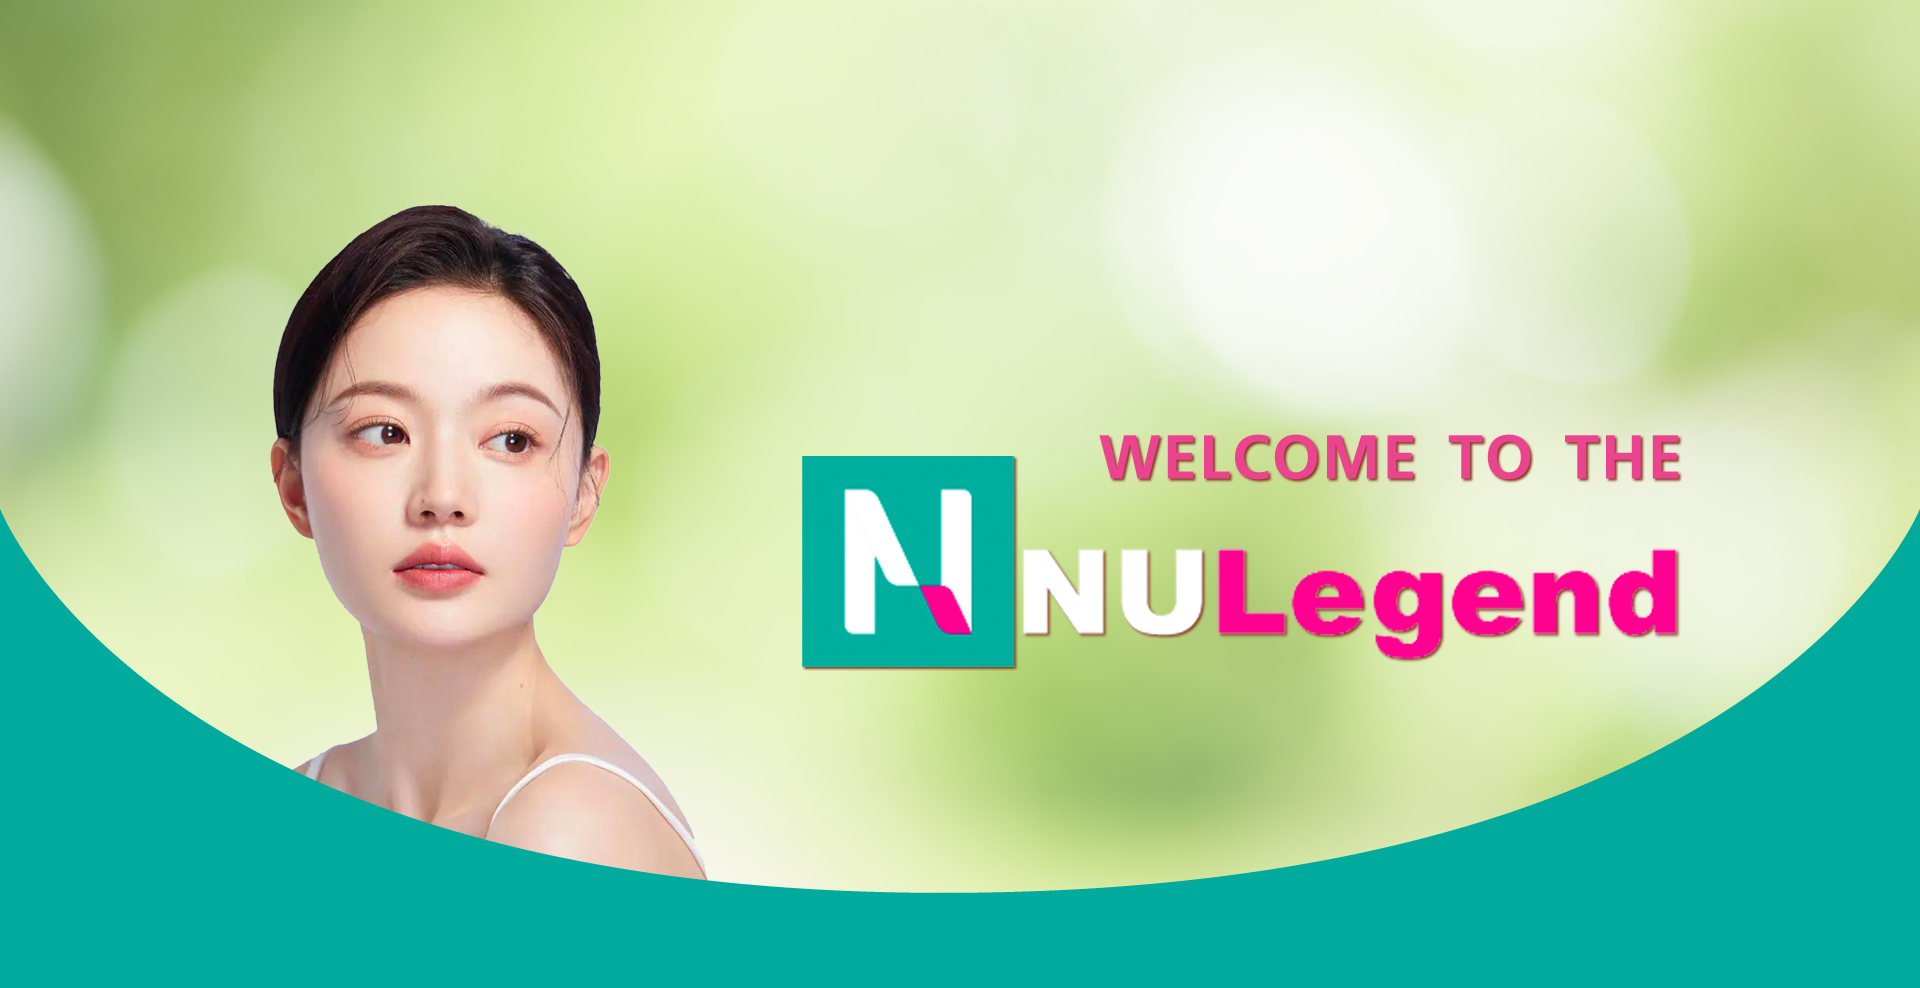 Nu-legend-welcome